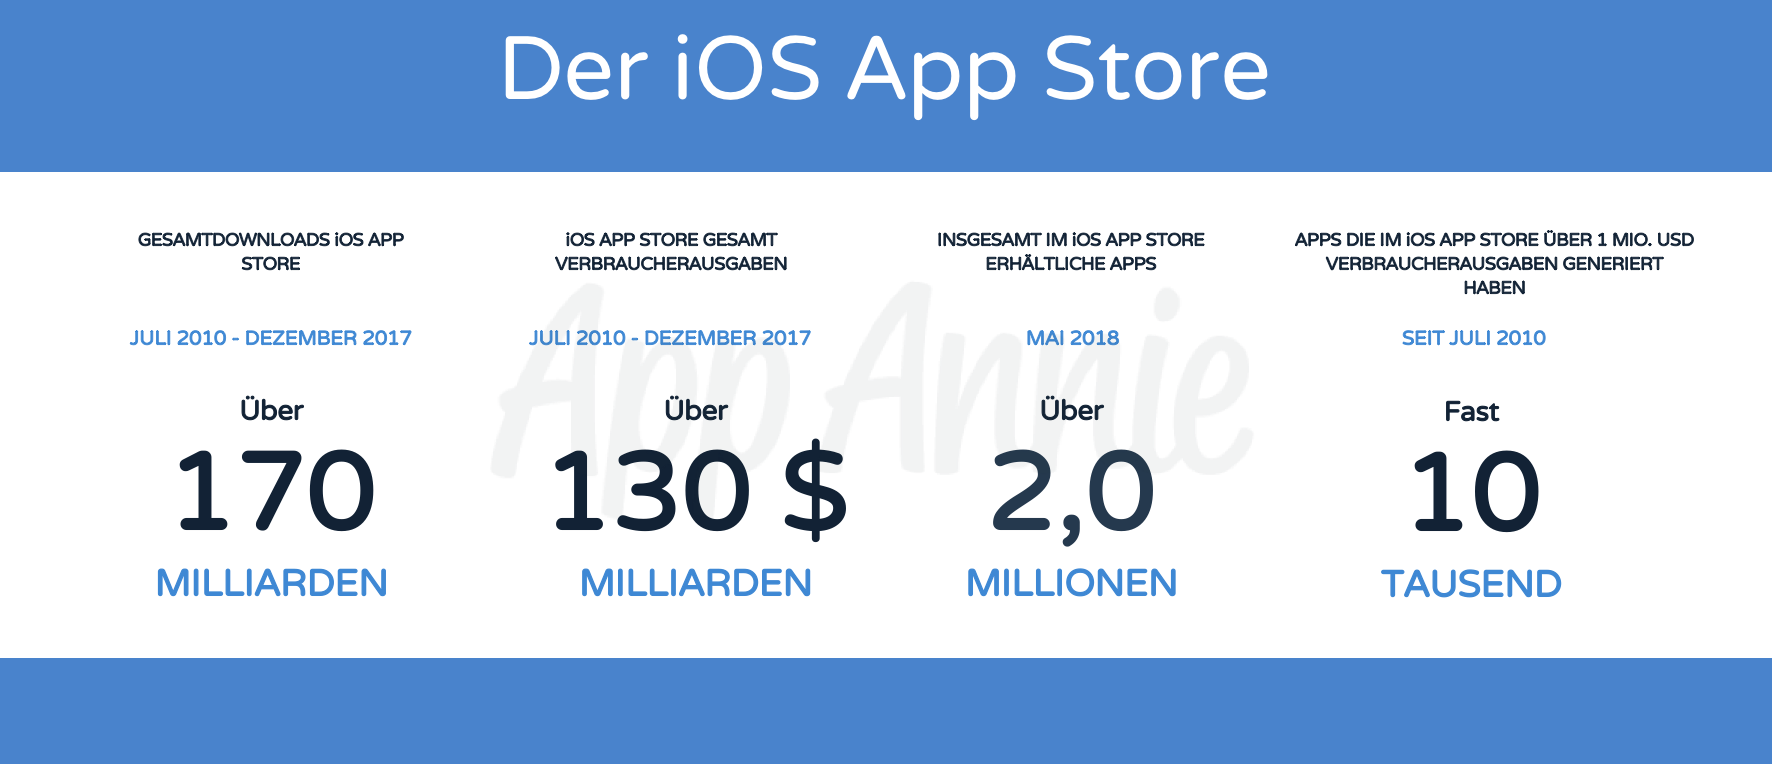 10 Jahre App Store: Die wichtigsten Zahlen